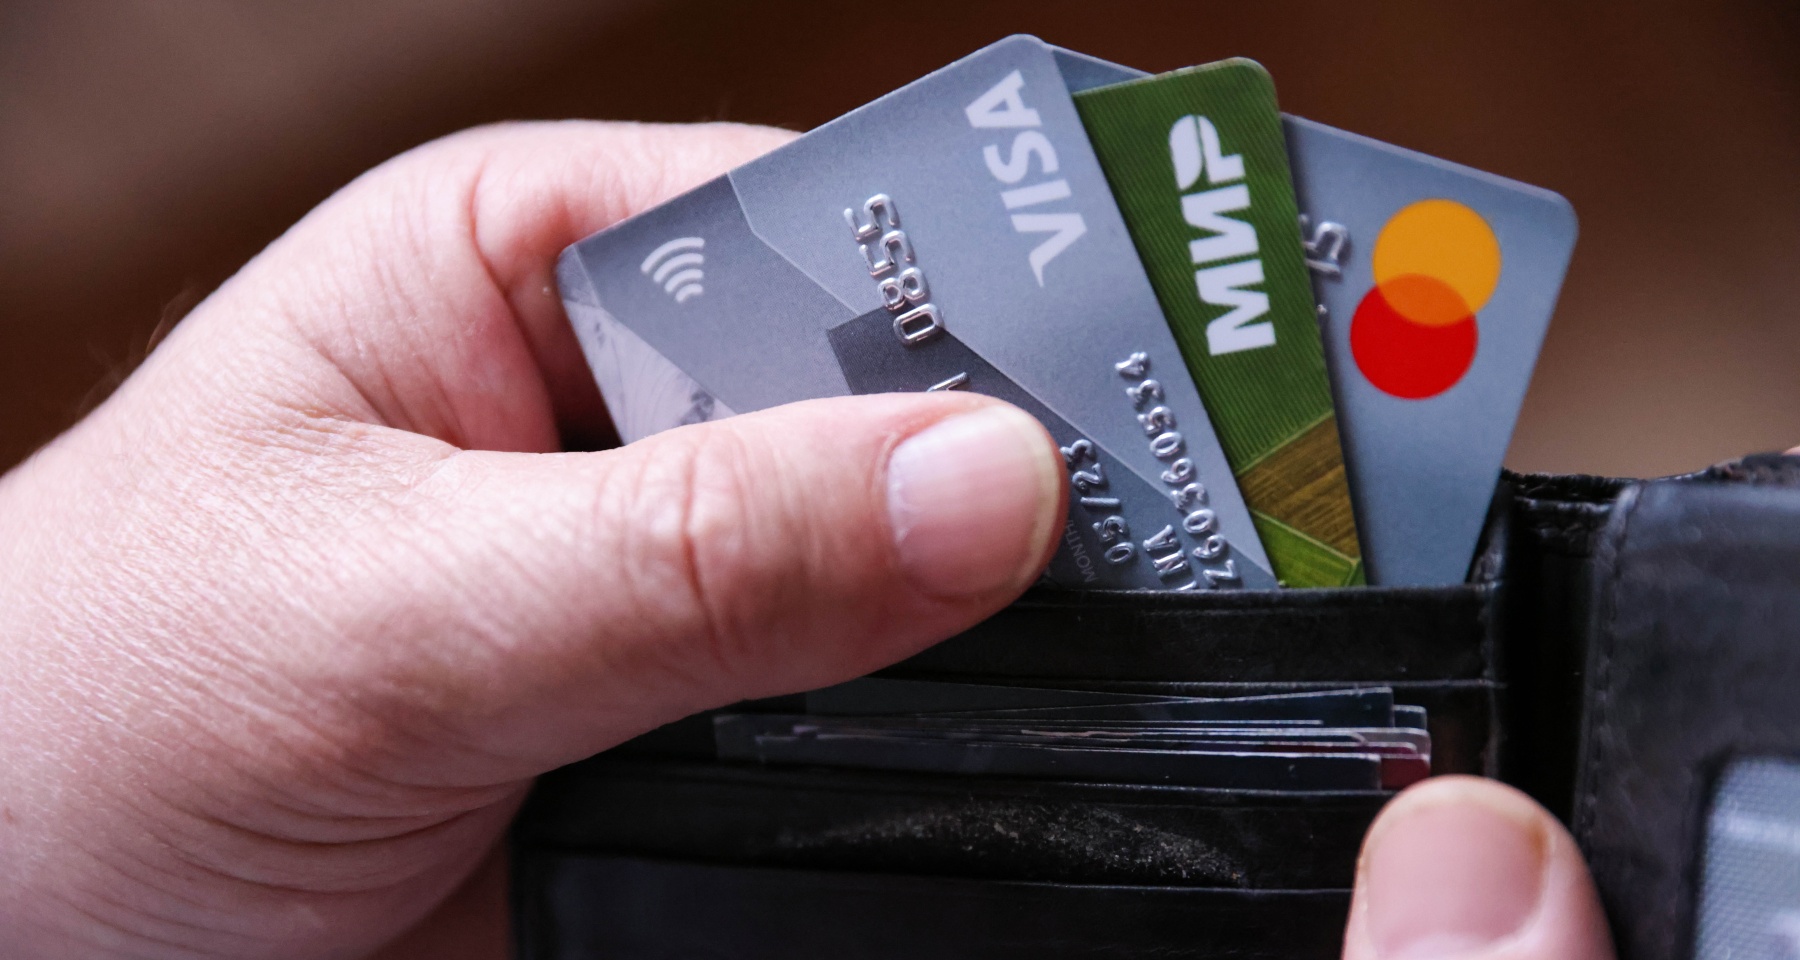 Сбер выводит из обращения часть карт, кредитки станут недоступны. Главное о банковских картах за неделю 